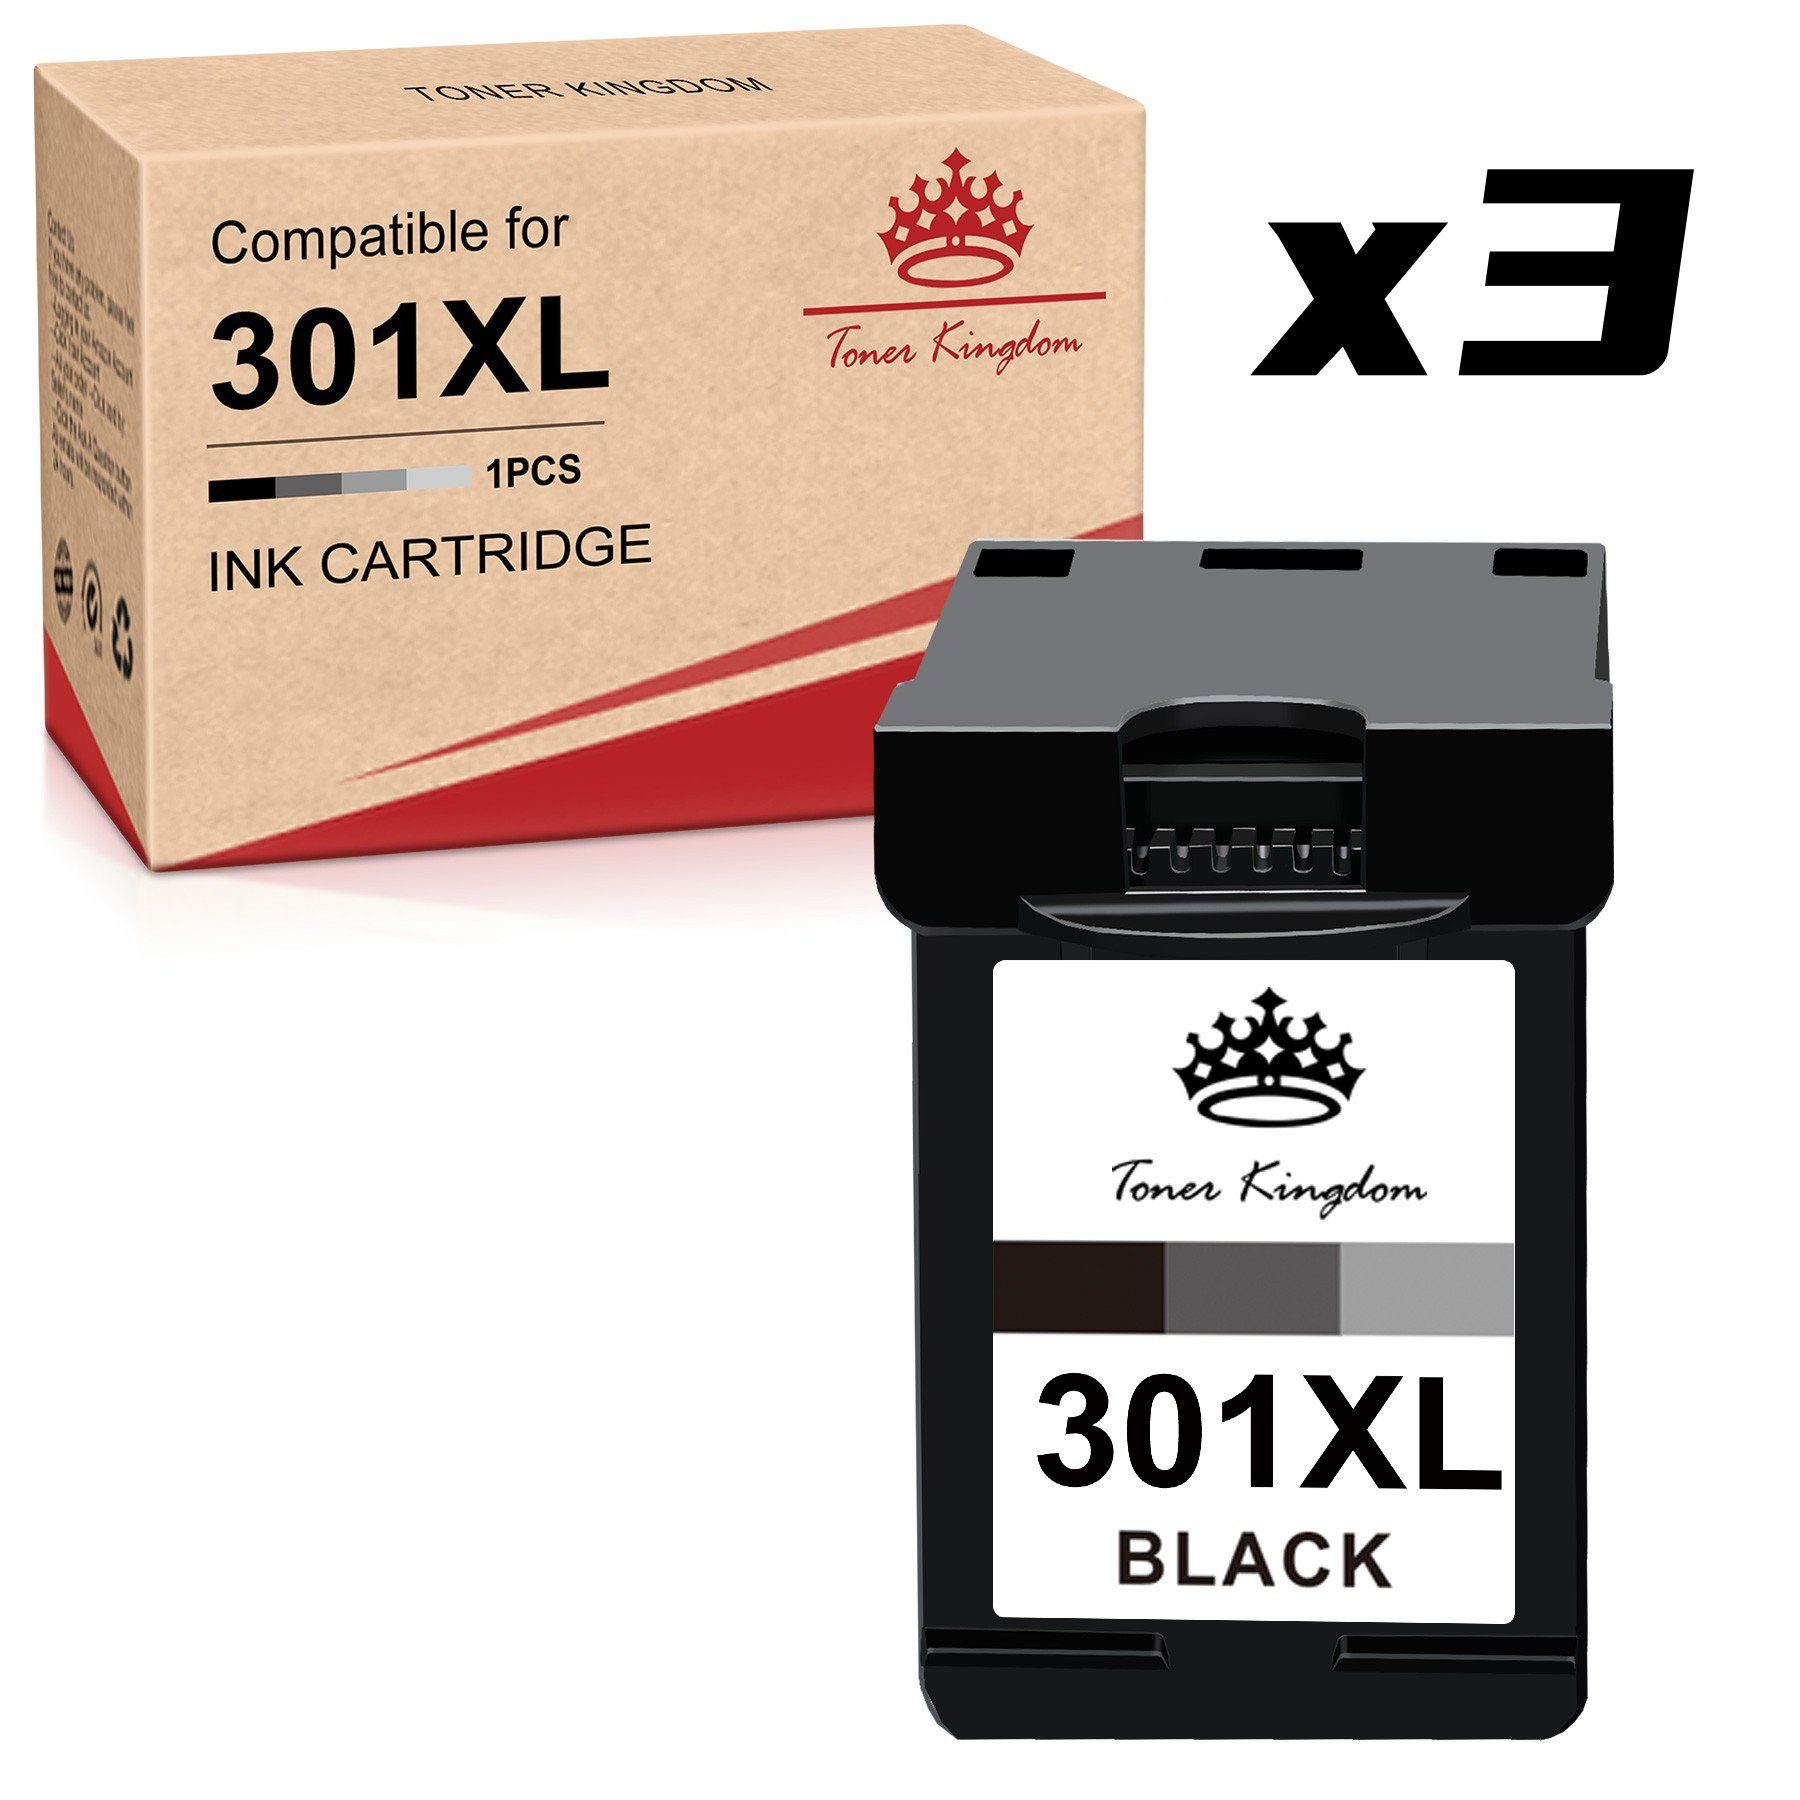 Toner Kingdom 3x Schwarze für HP 301 XL Deskjet 3000 2542 2549 1510 1010 Tintenpatrone